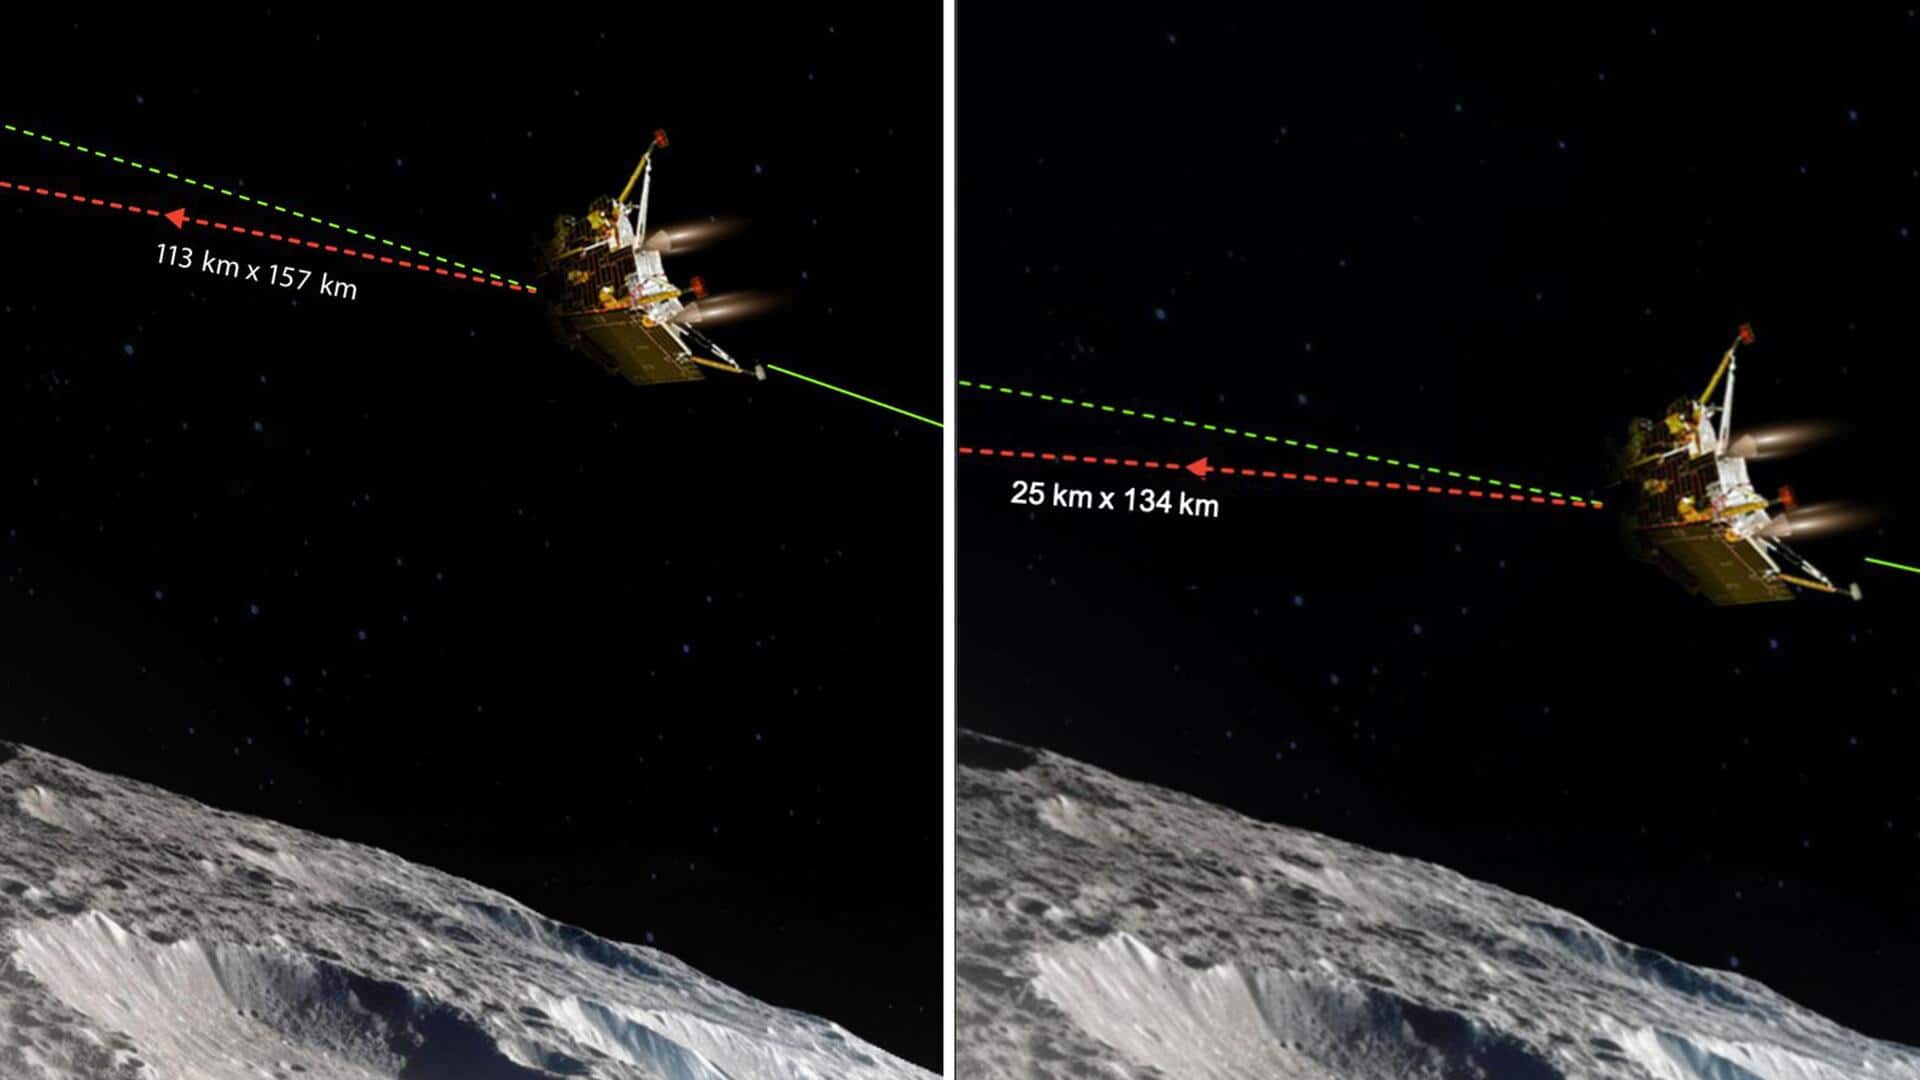 चंद्रयान-3 अब चांद की सतह से 25 किलोमीटर दूर, 23 अगस्त को सॉफ्ट लैंडिंग की उम्मीद  